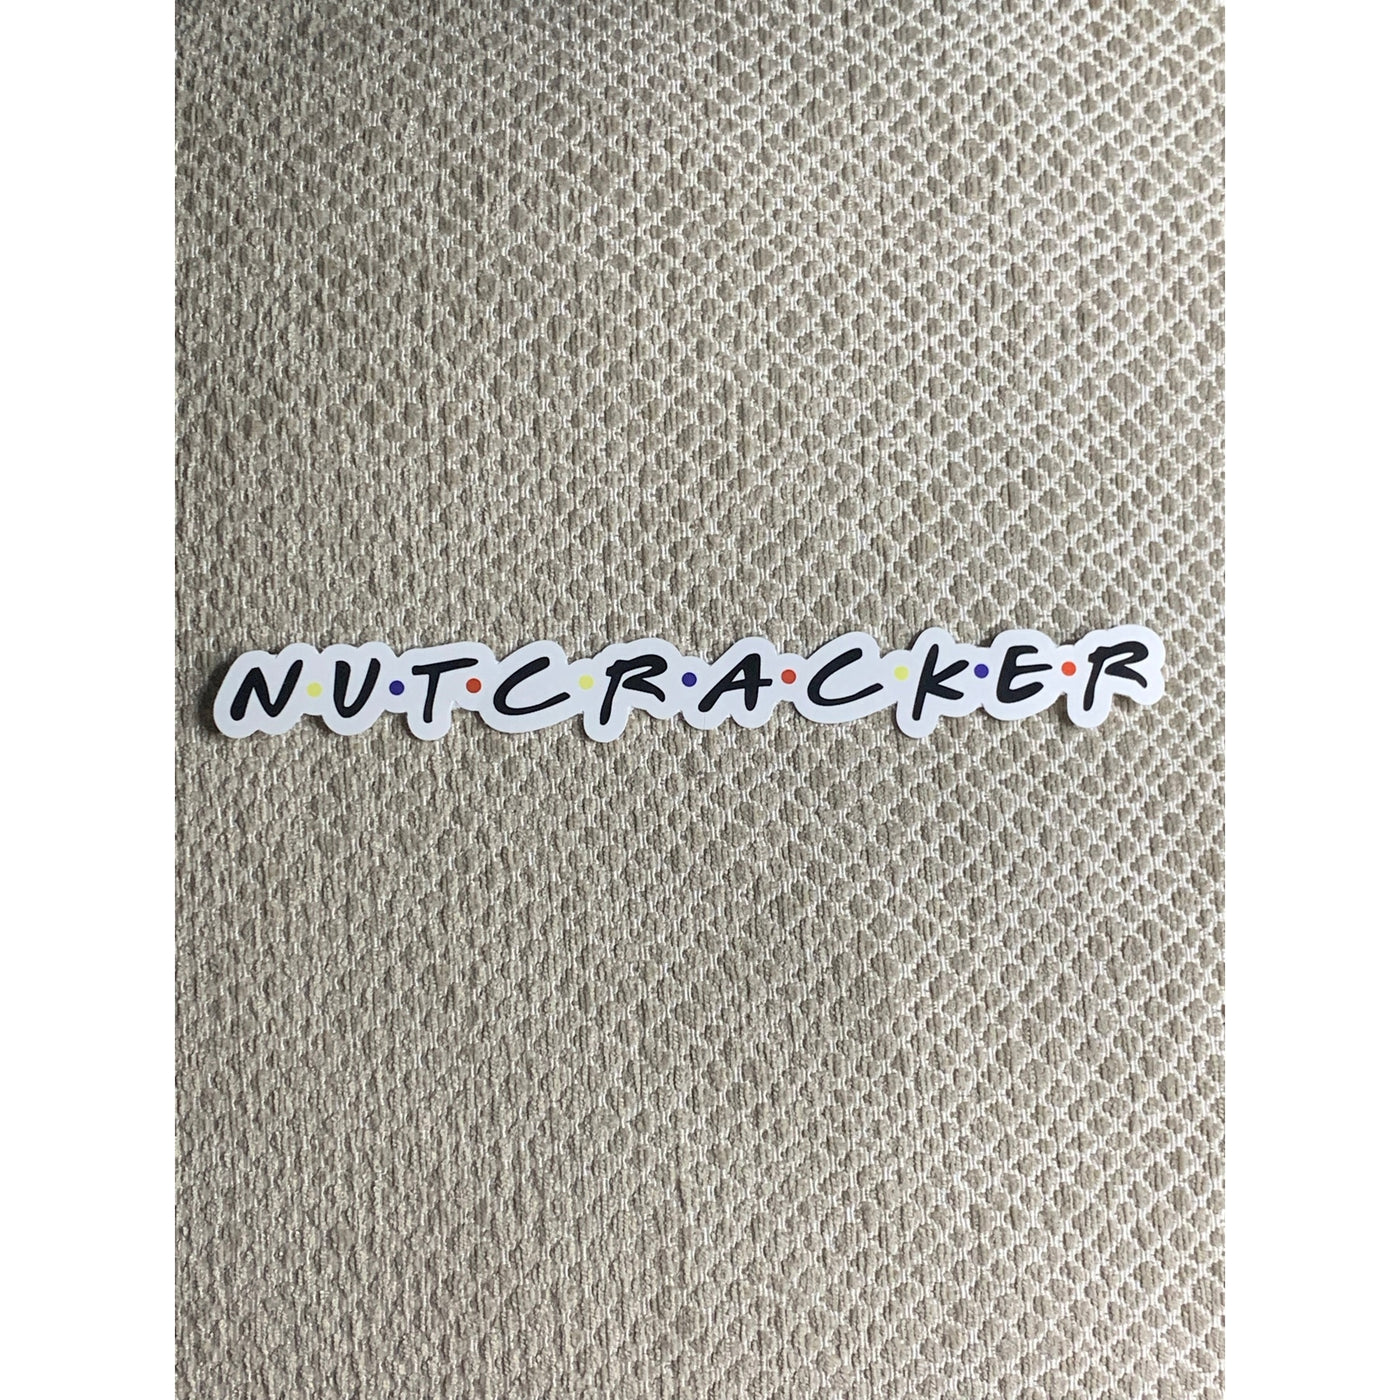 Denali Nutcracker Friends Sticker